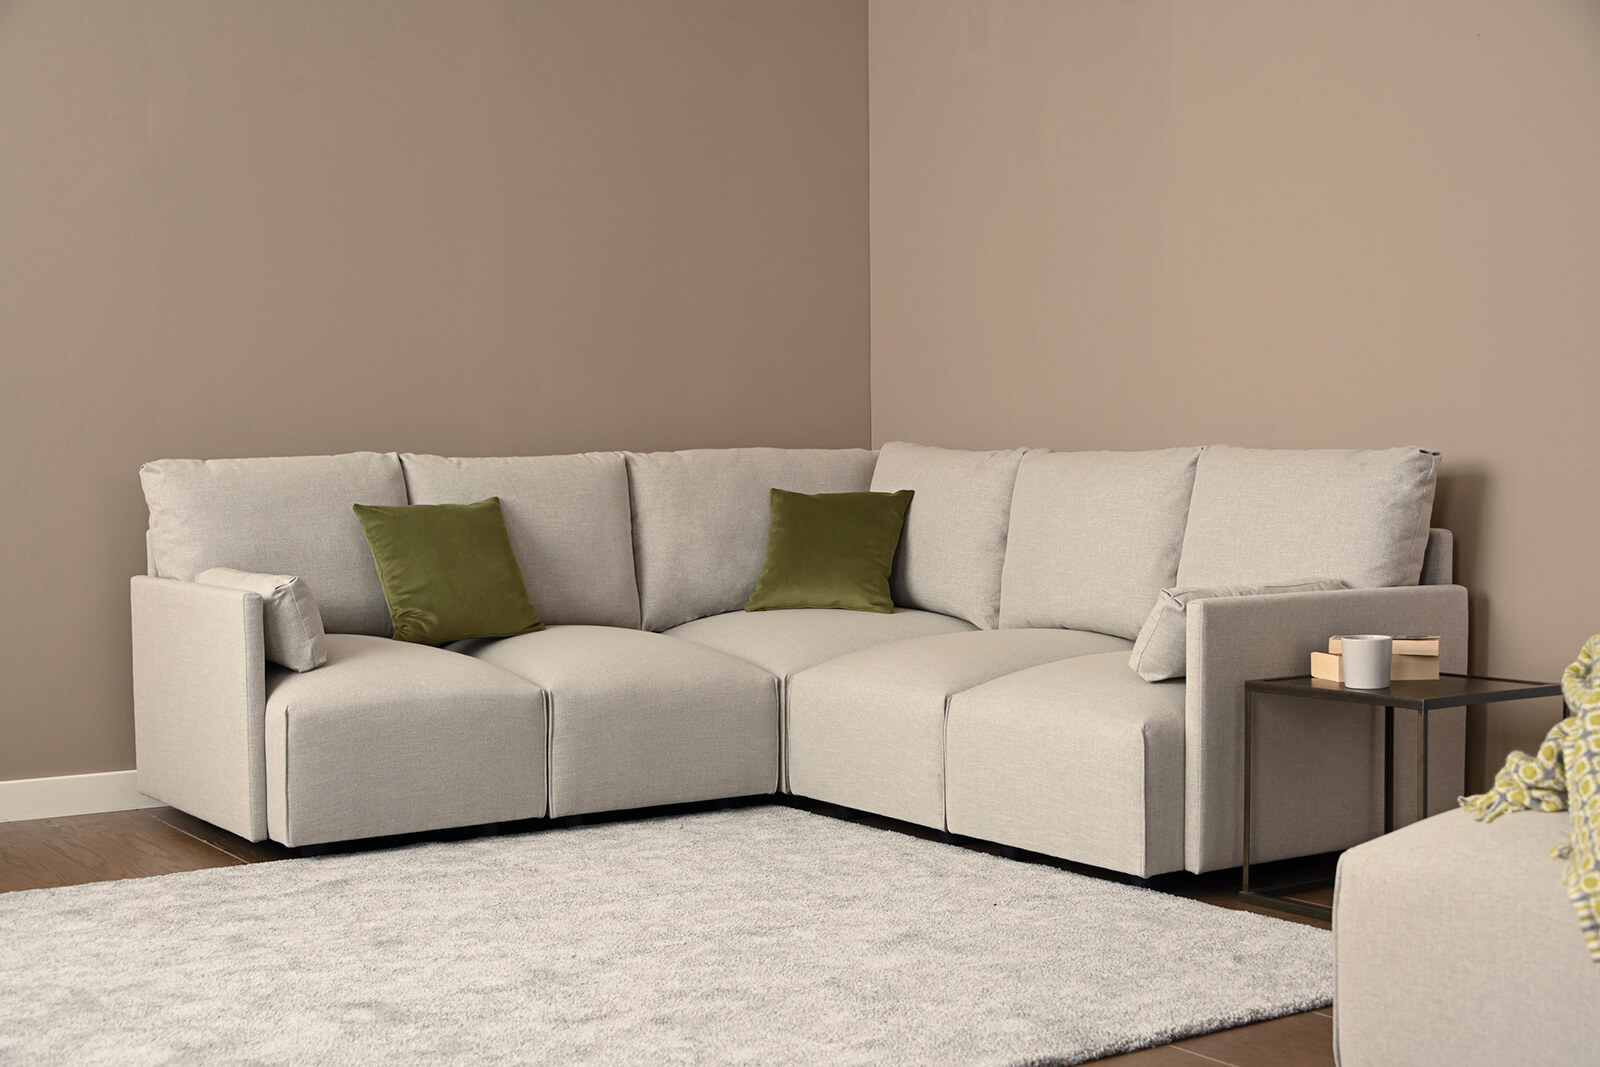 HB04-medium-corner-sofa-3q-coconut-3x3-lifestyle